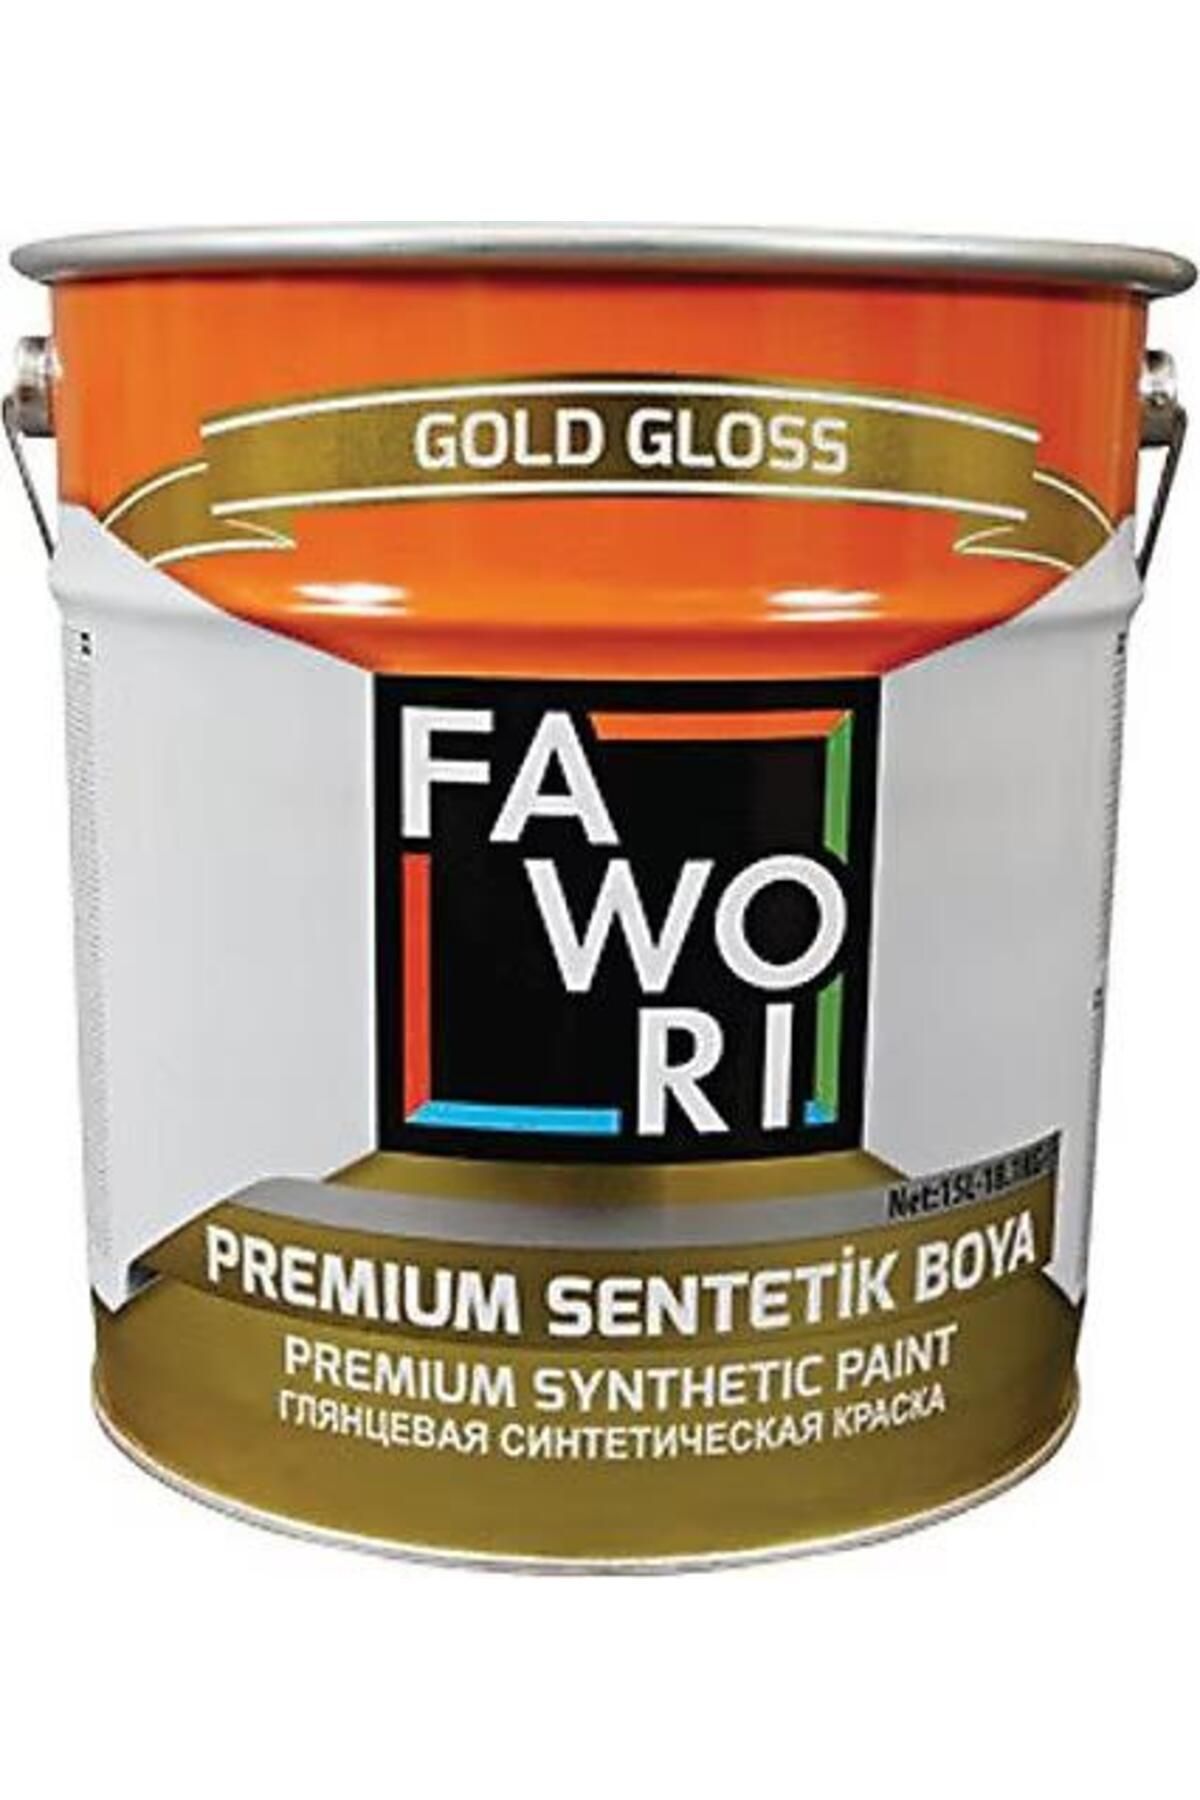 Fawori Premium Sentetik Gümüş Gri 0,75 Lt